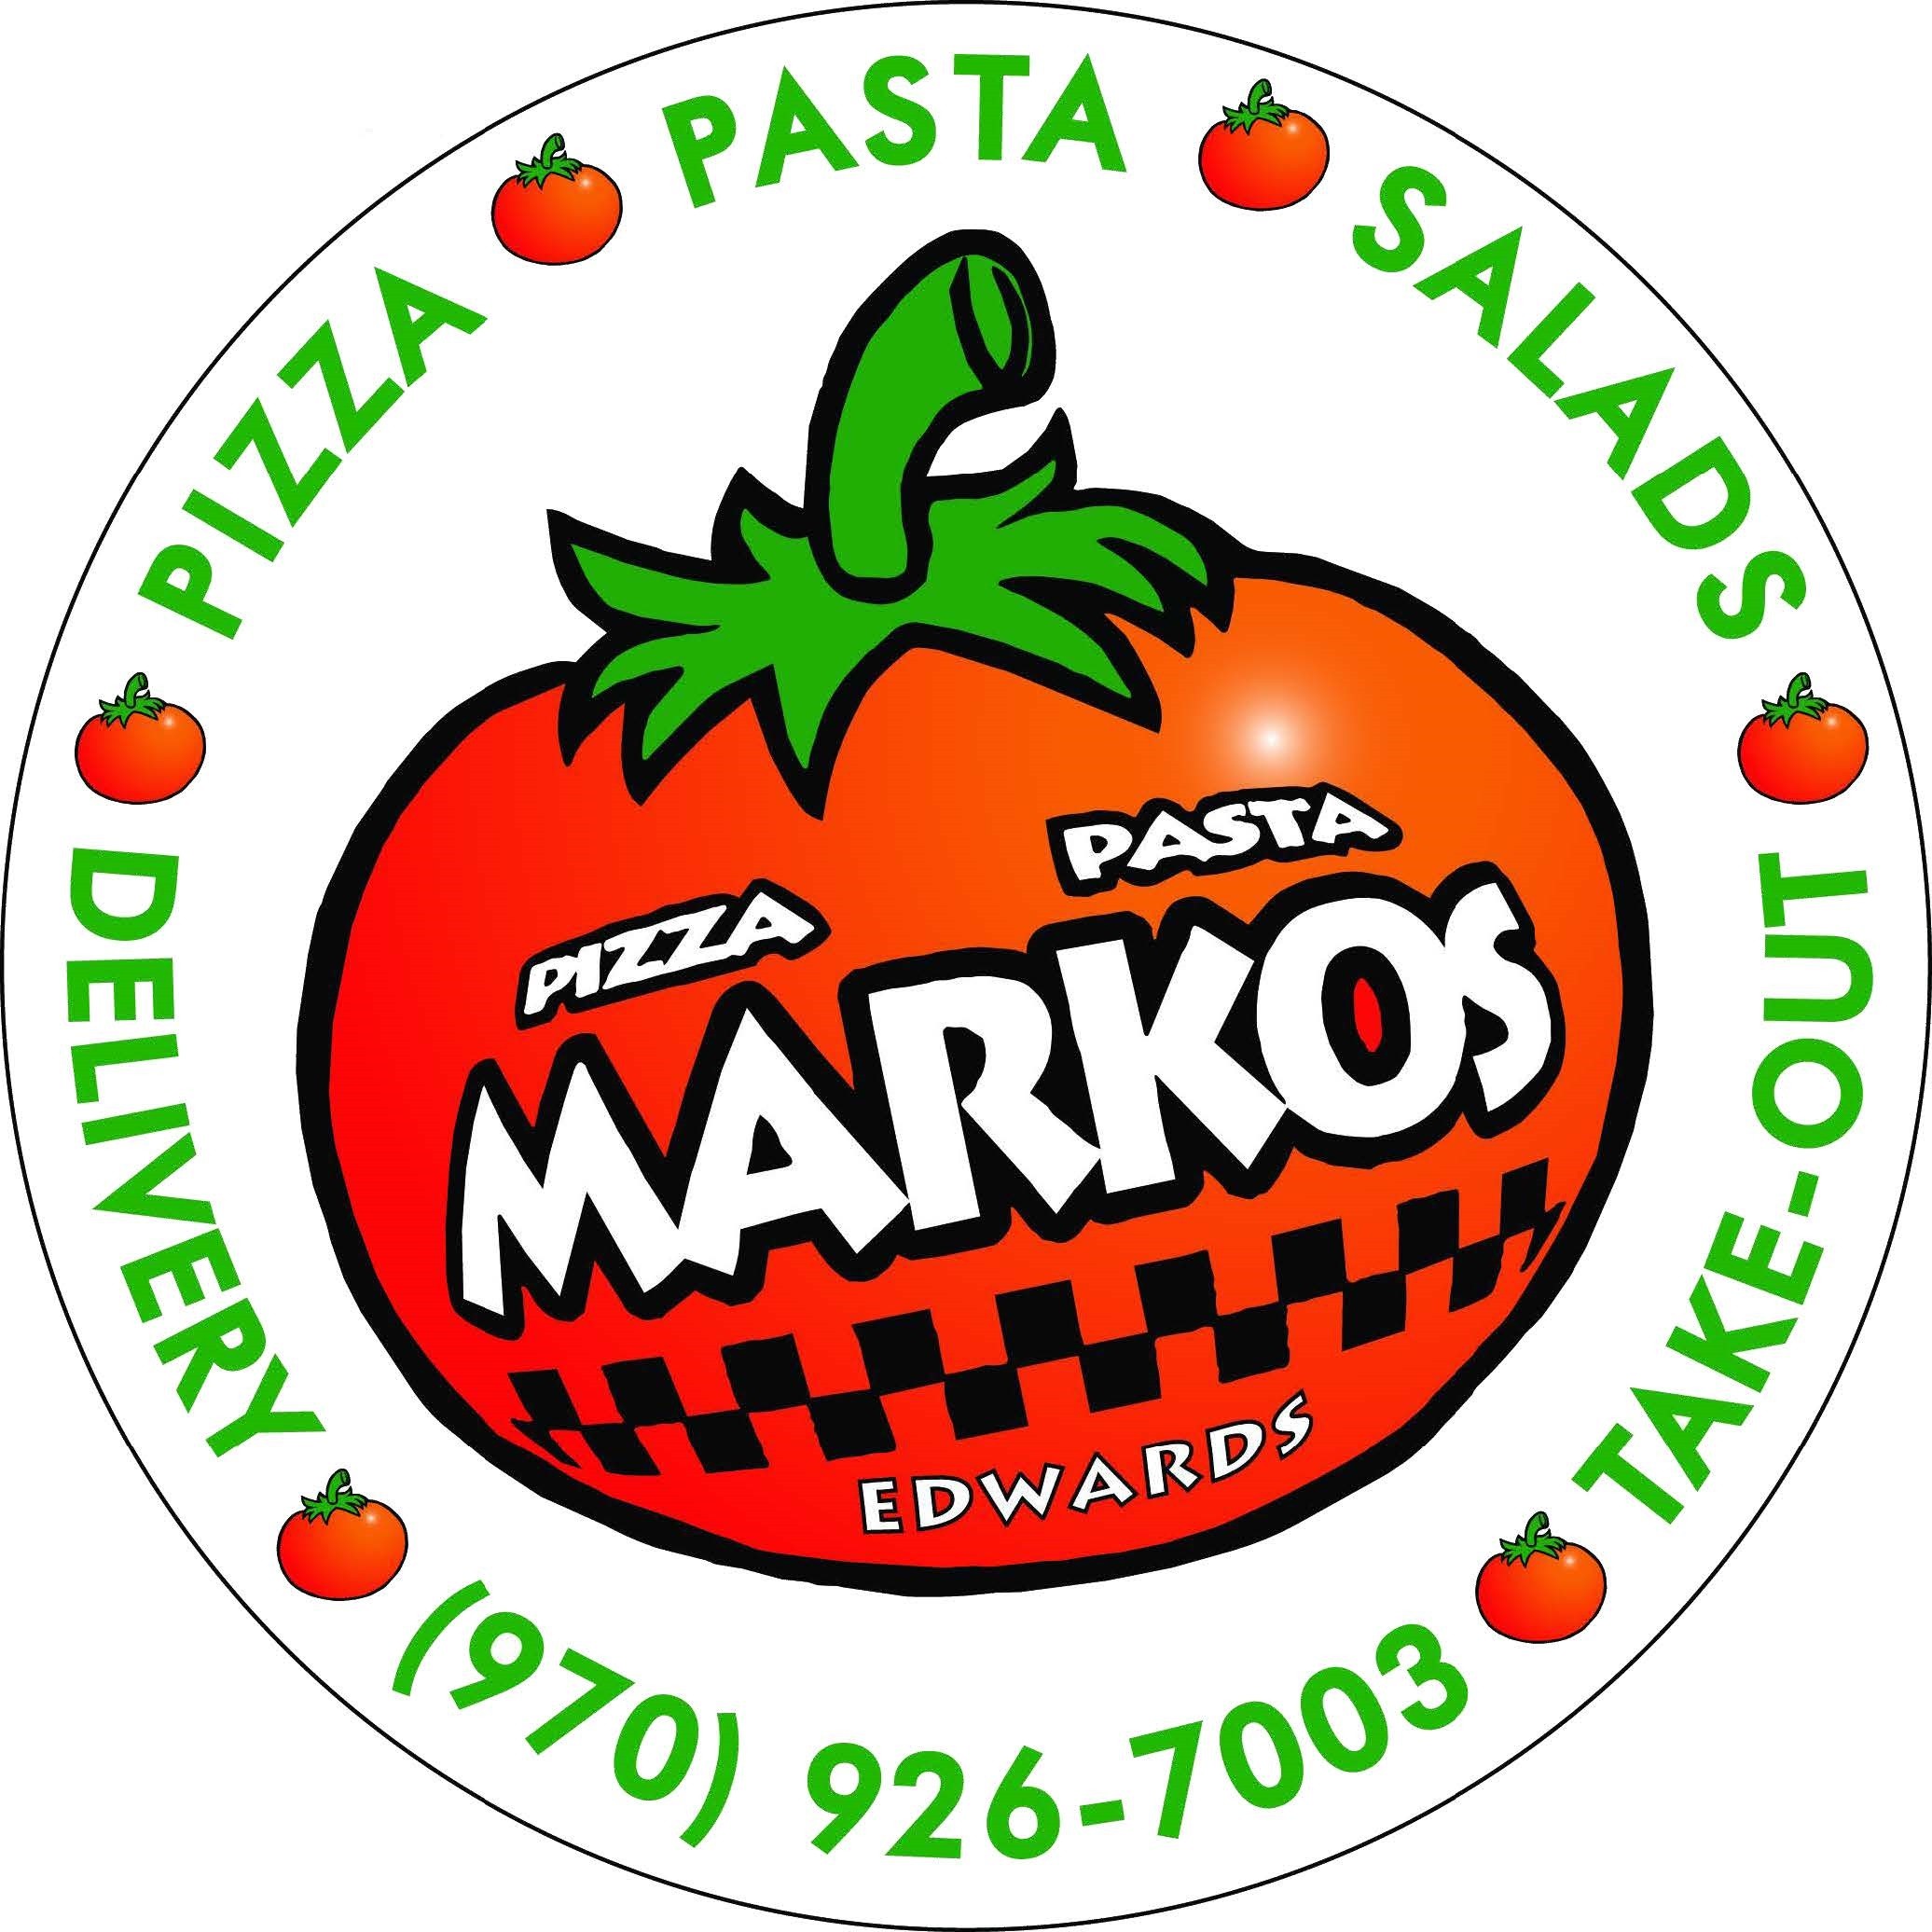 Markos pizza